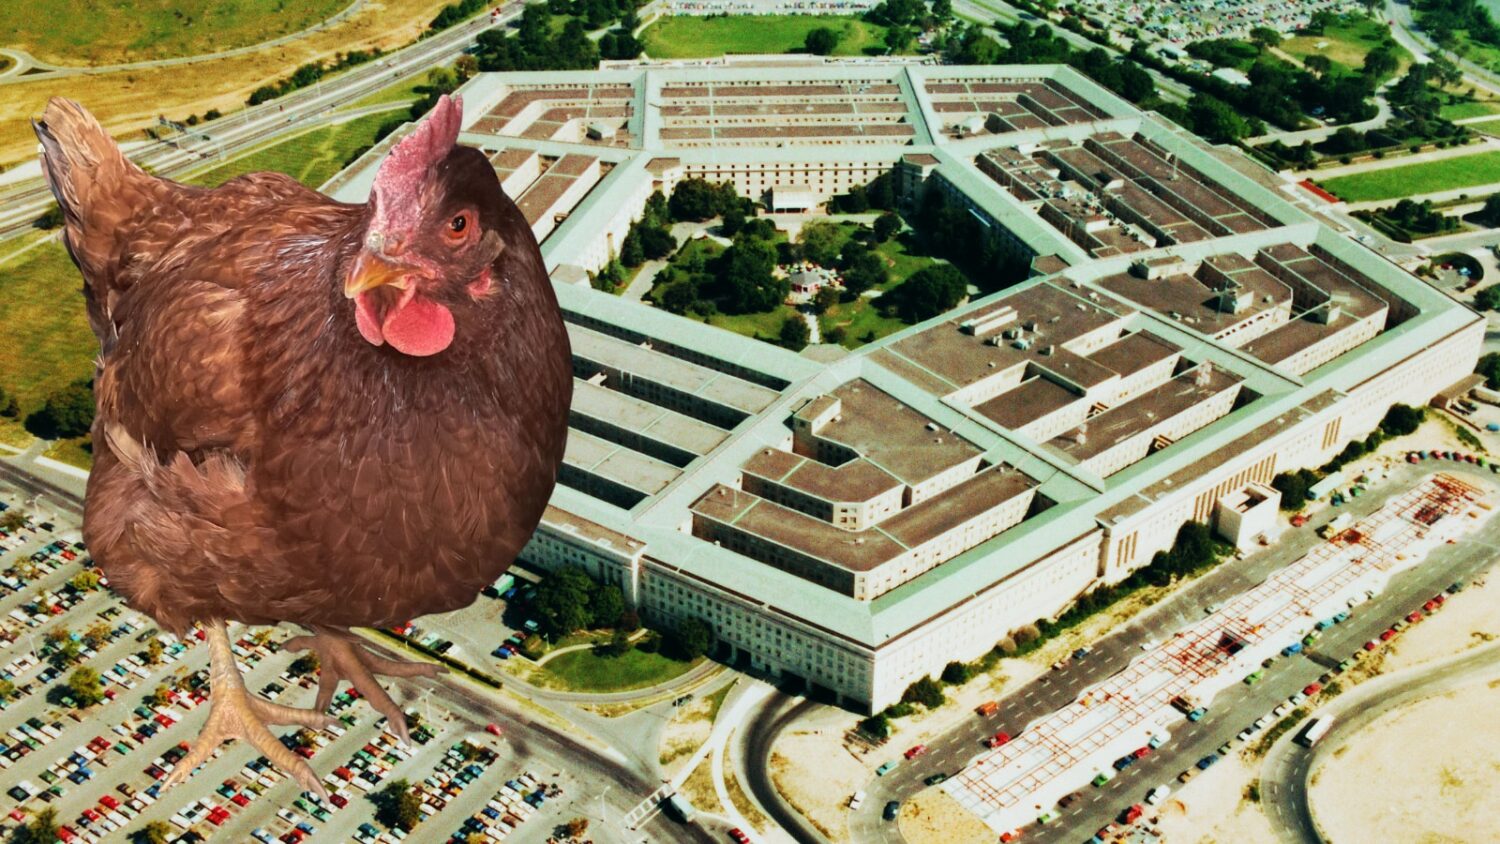 ΗΠΑ: Κατάσκοπος ή απλό μπέρδεμα; Μια κότα πιάστηκε καθώς επιχείρησε να μπει στο Πεντάγωνο